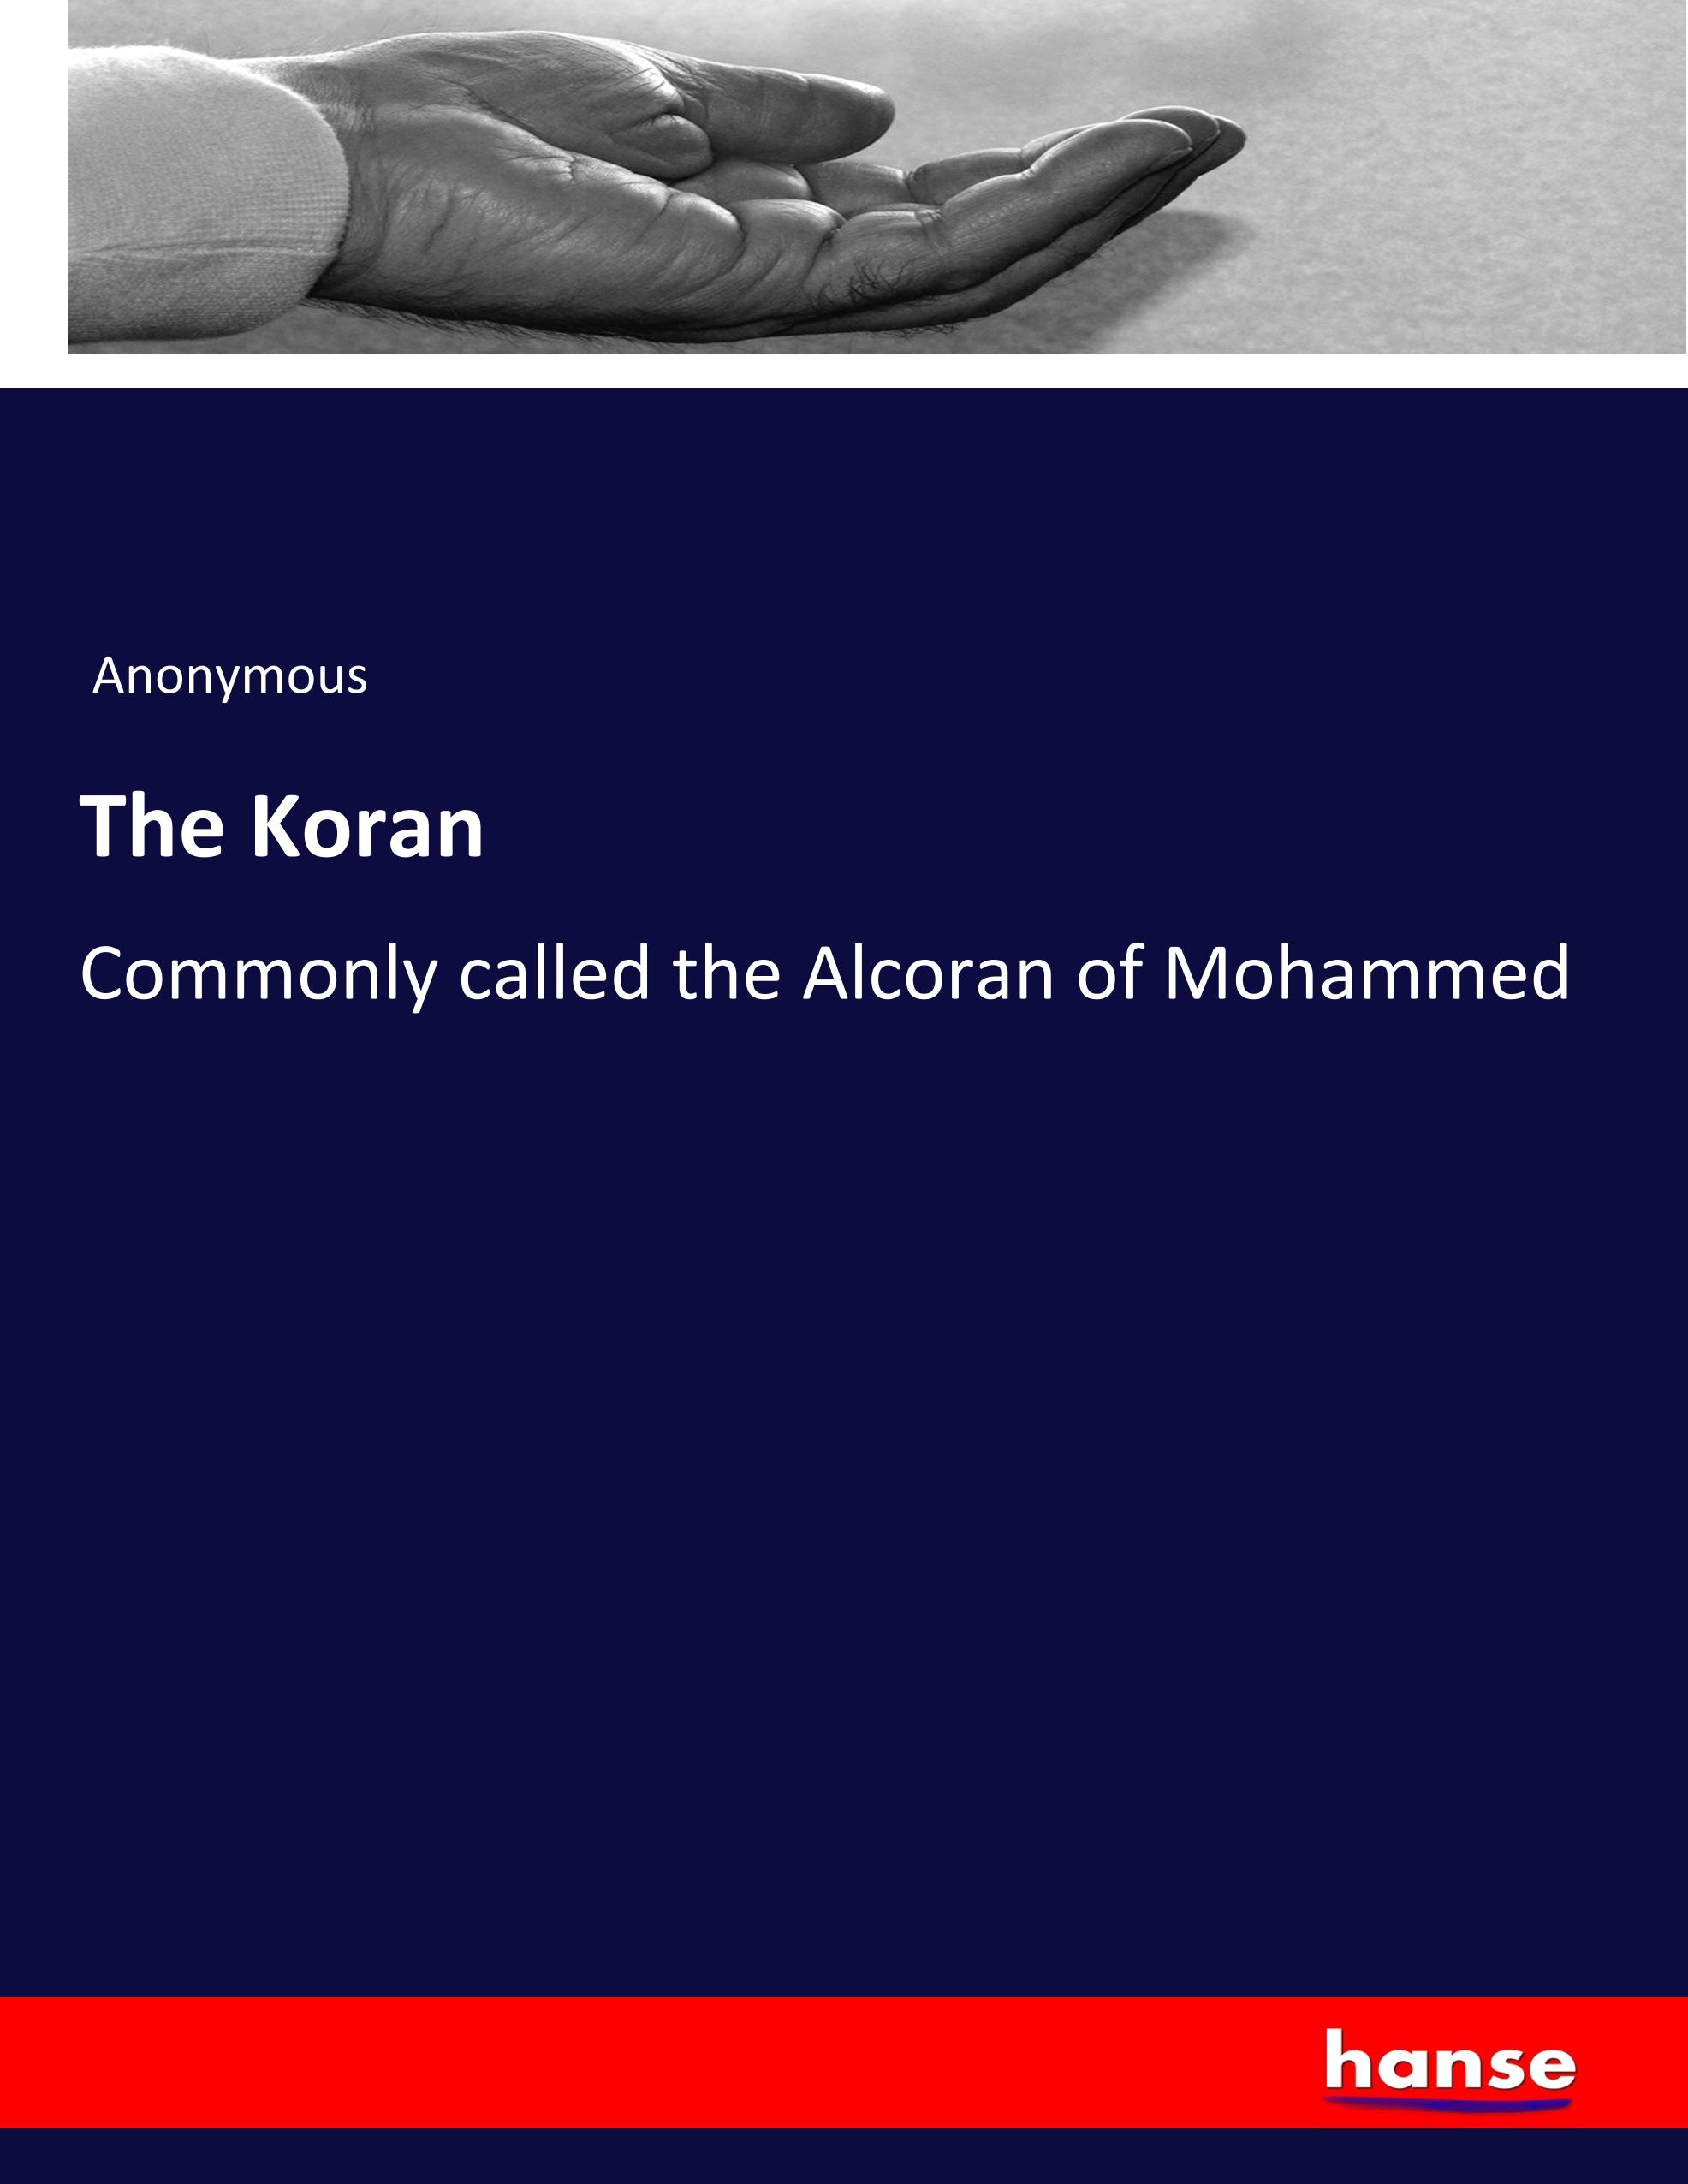 The Koran - Anonym